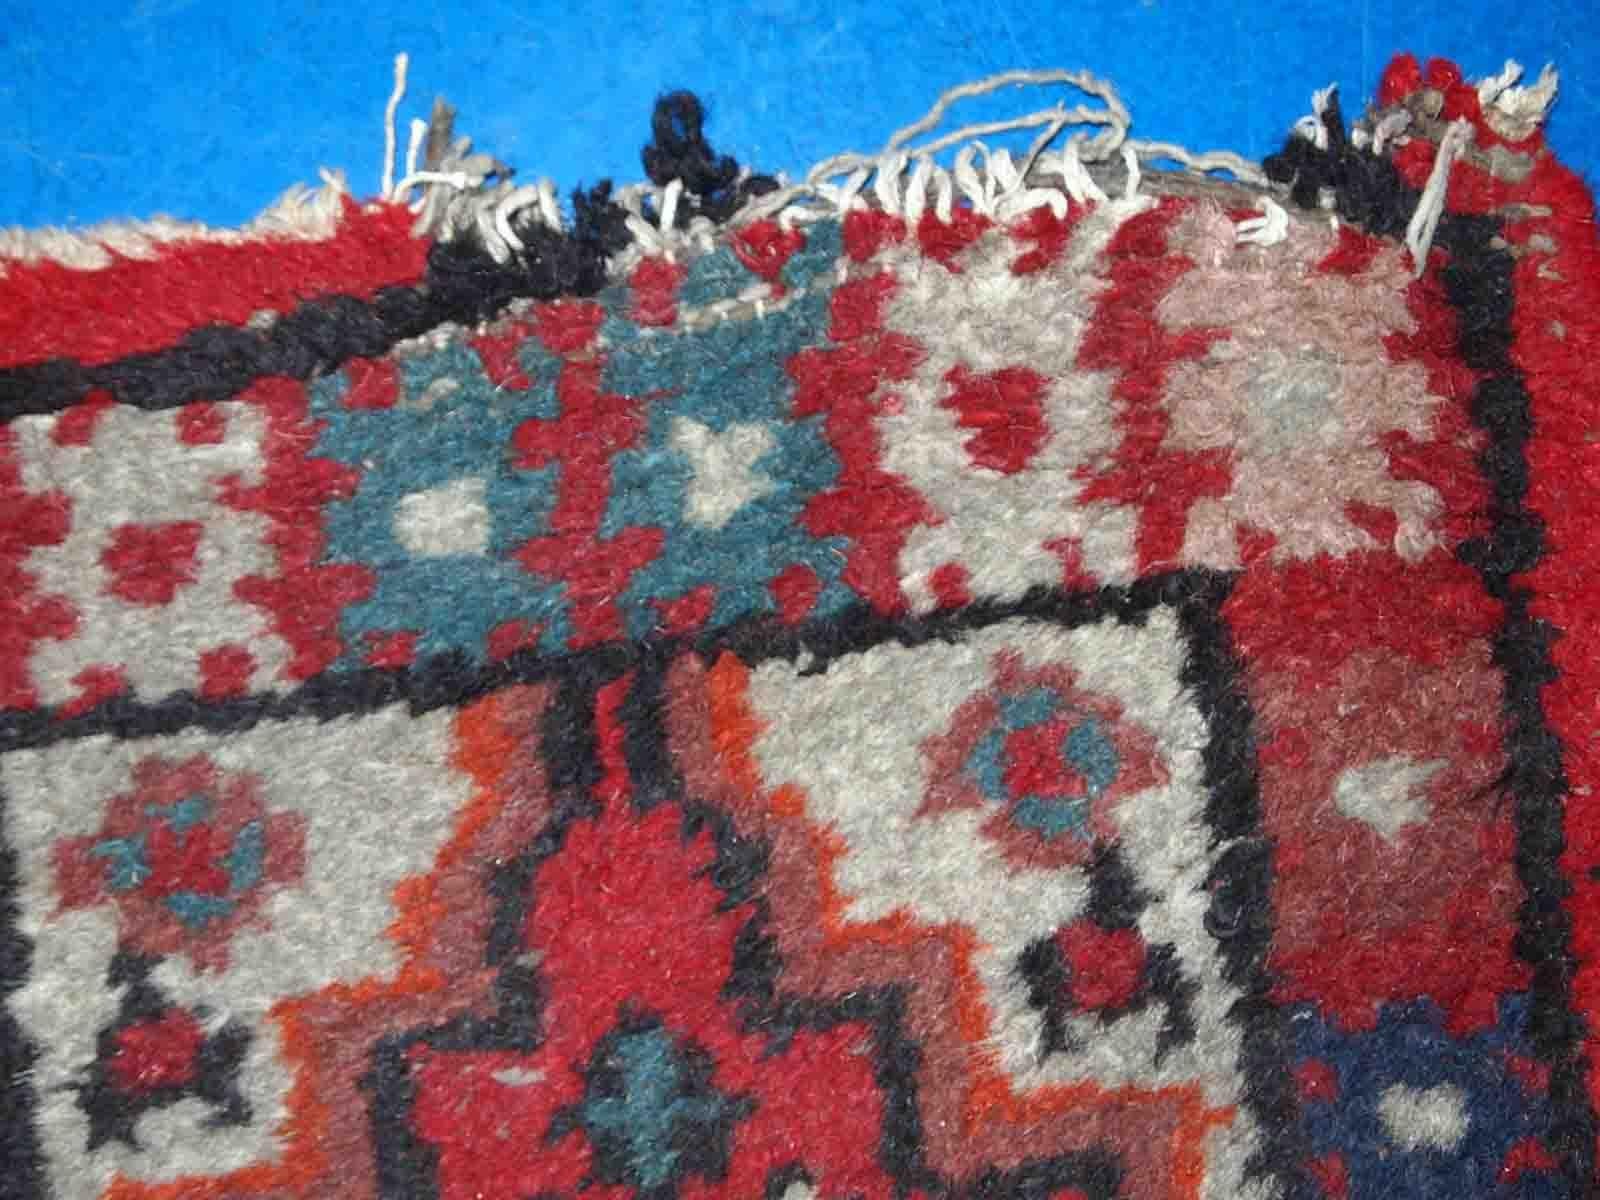 Vintage handgefertigte Matte aus dem Nahen Osten in Originalzustand, es hat einige Altersspuren. Der Teppich stammt aus dem Ende des 20. Jahrhunderts.

-zustand: original, leichte Altersspuren,

-etwa: 1960er Jahre,

-größe: 1,4' x 2,2' (42cm